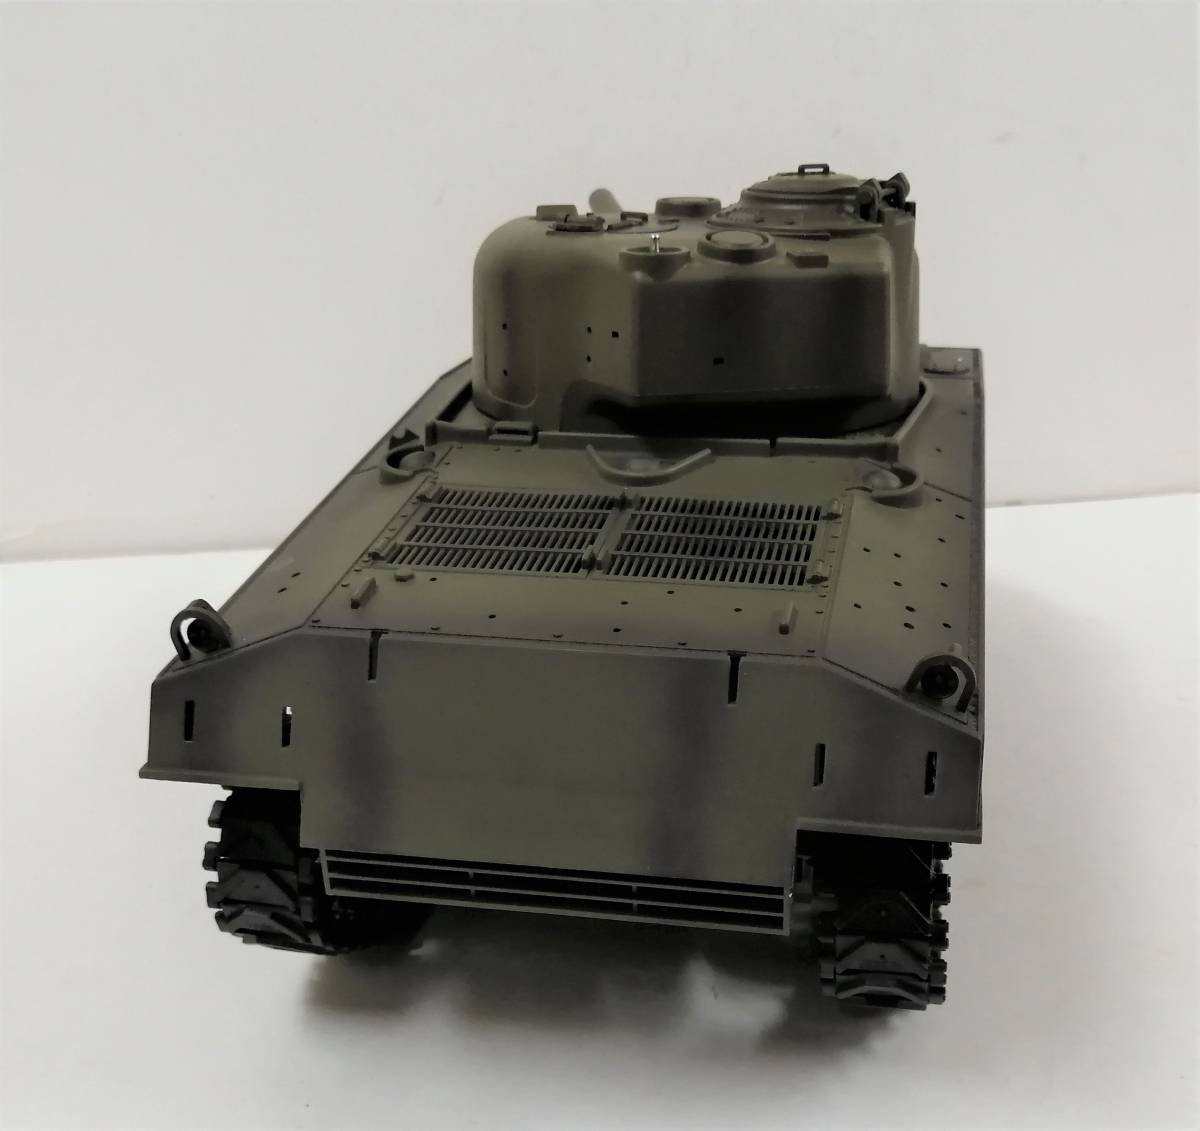 1/16戦車ラジコン USシャーマン ヘンロン3898-1 7.0基板 richproducts